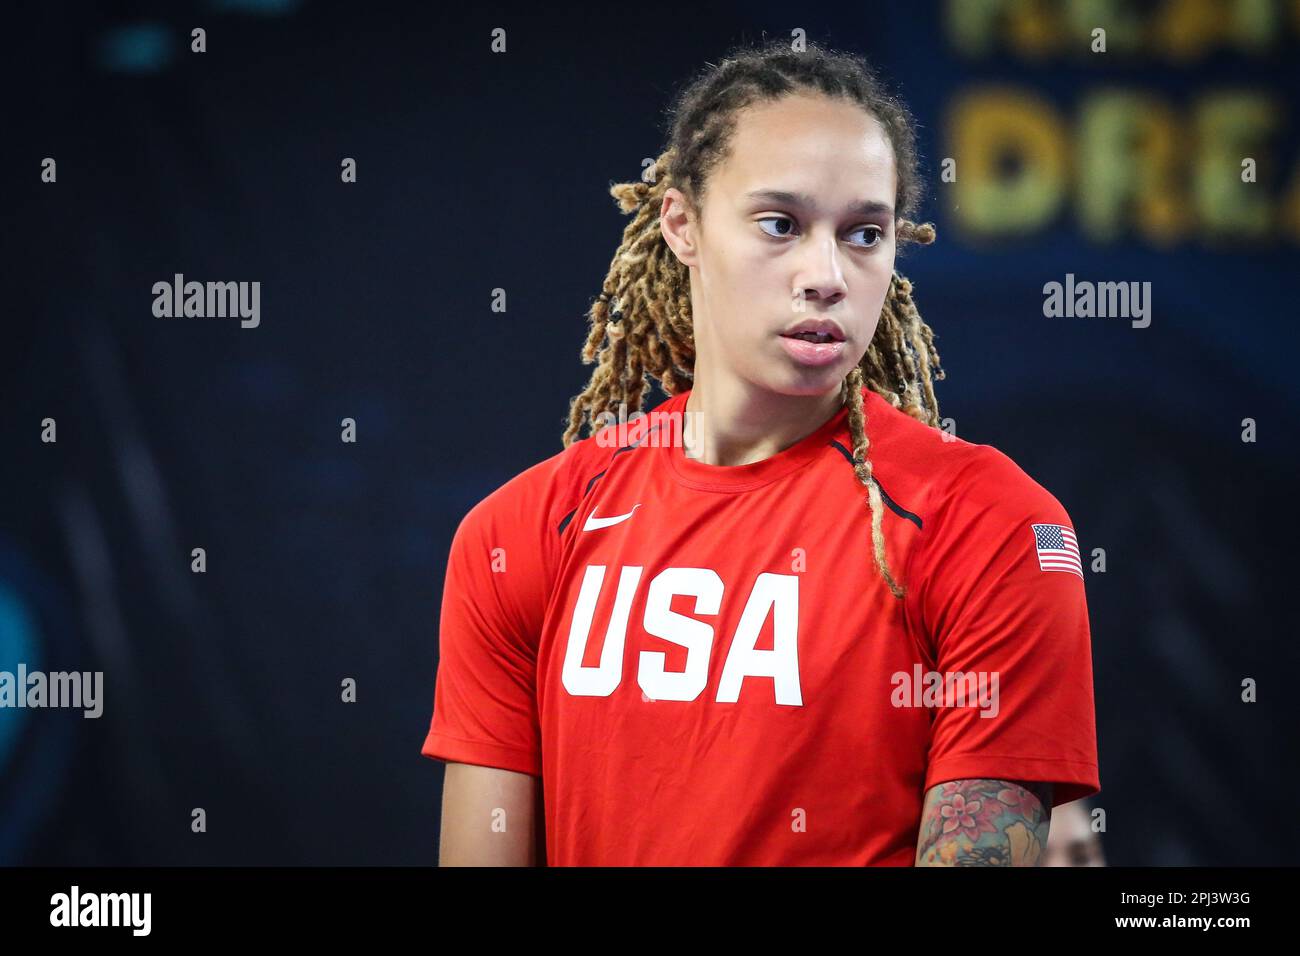 Espagne, Ténérife, 25 septembre 2018: Portrait du joueur de basket-ball américain Brittney Griner pendant la coupe du monde de basket-ball féminin Banque D'Images